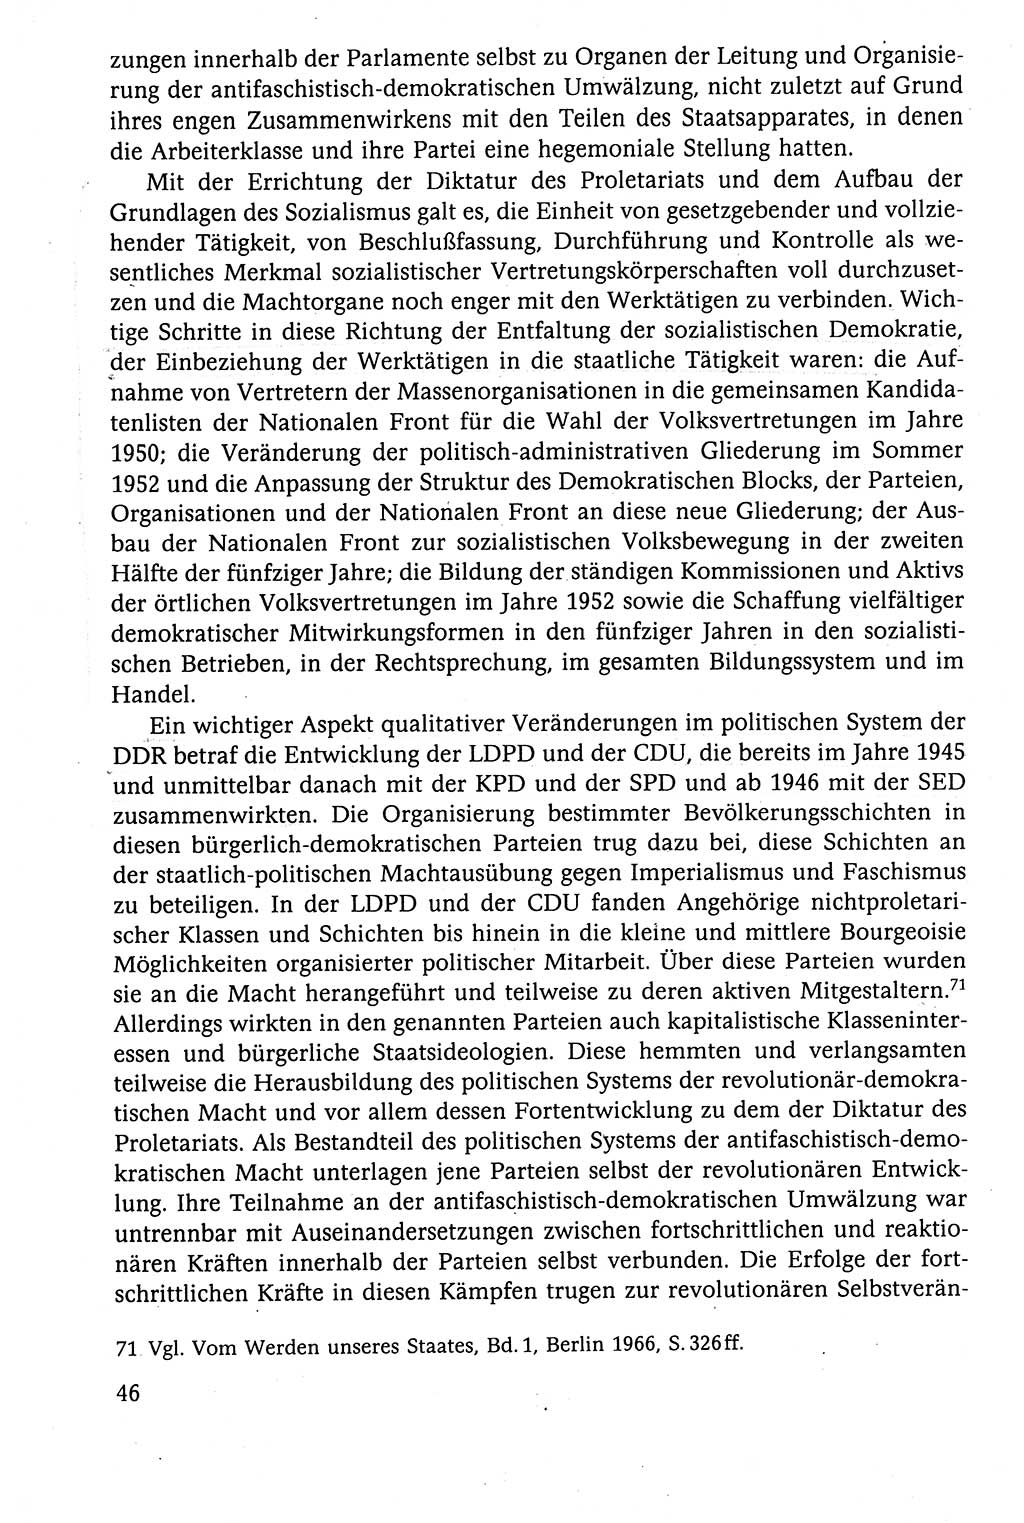 Der Staat im politischen System der DDR (Deutsche Demokratische Republik) 1986, Seite 46 (St. pol. Sys. DDR 1986, S. 46)